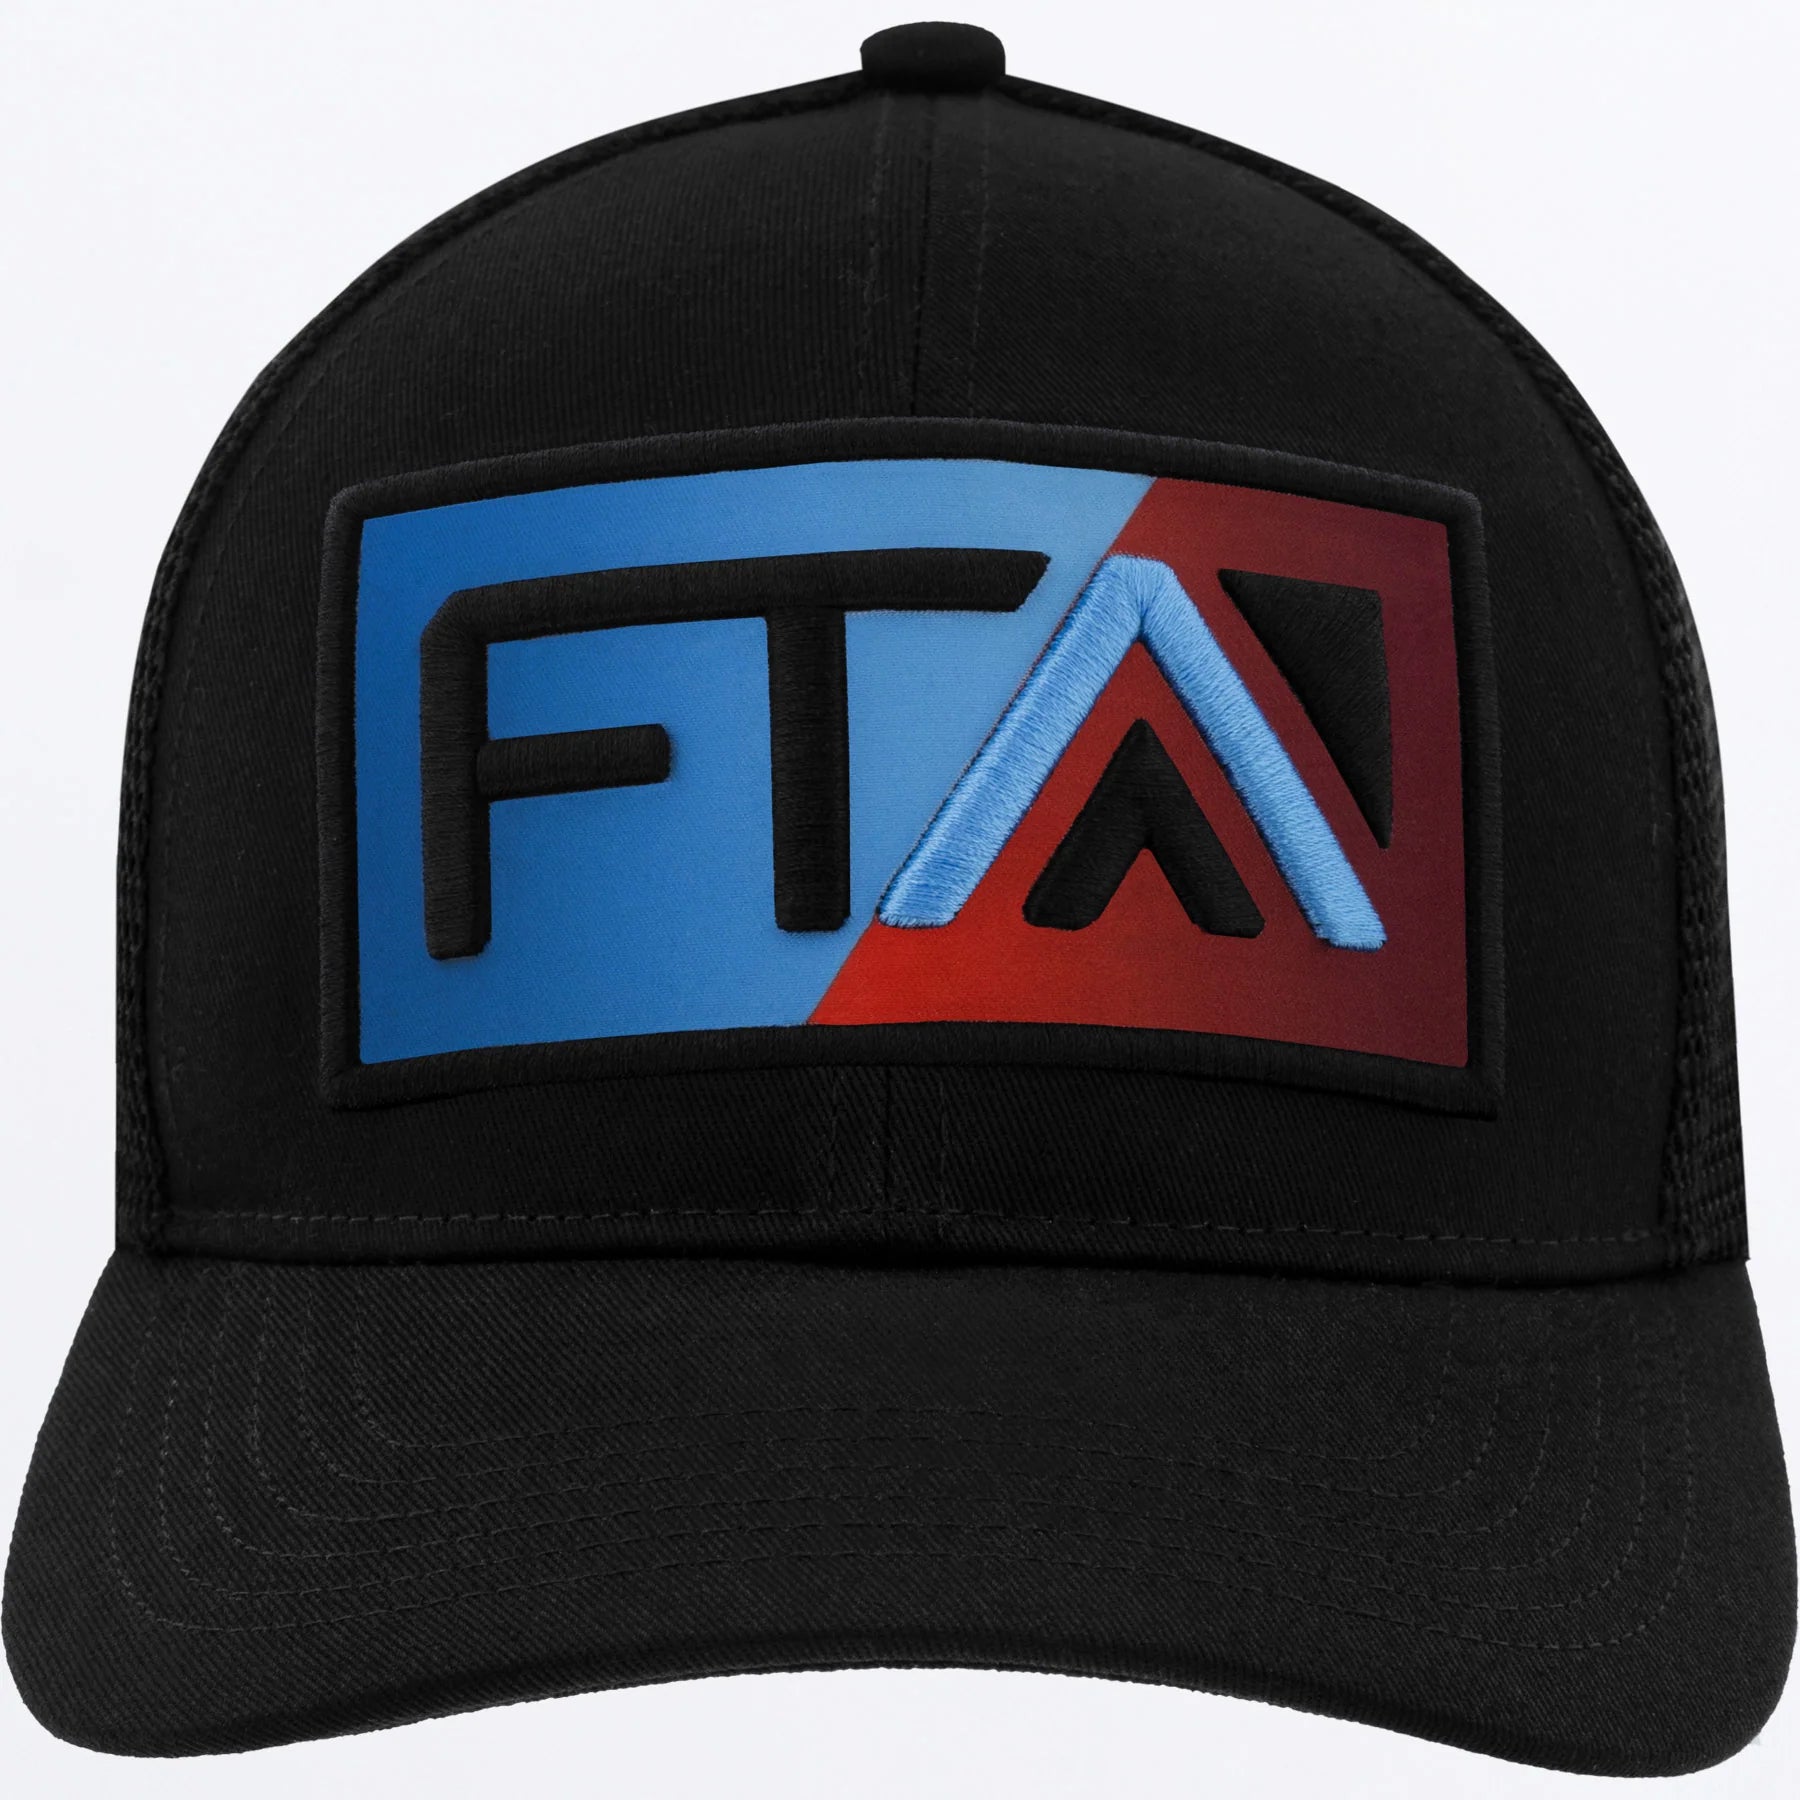 FTA Stylz Hat Tetra